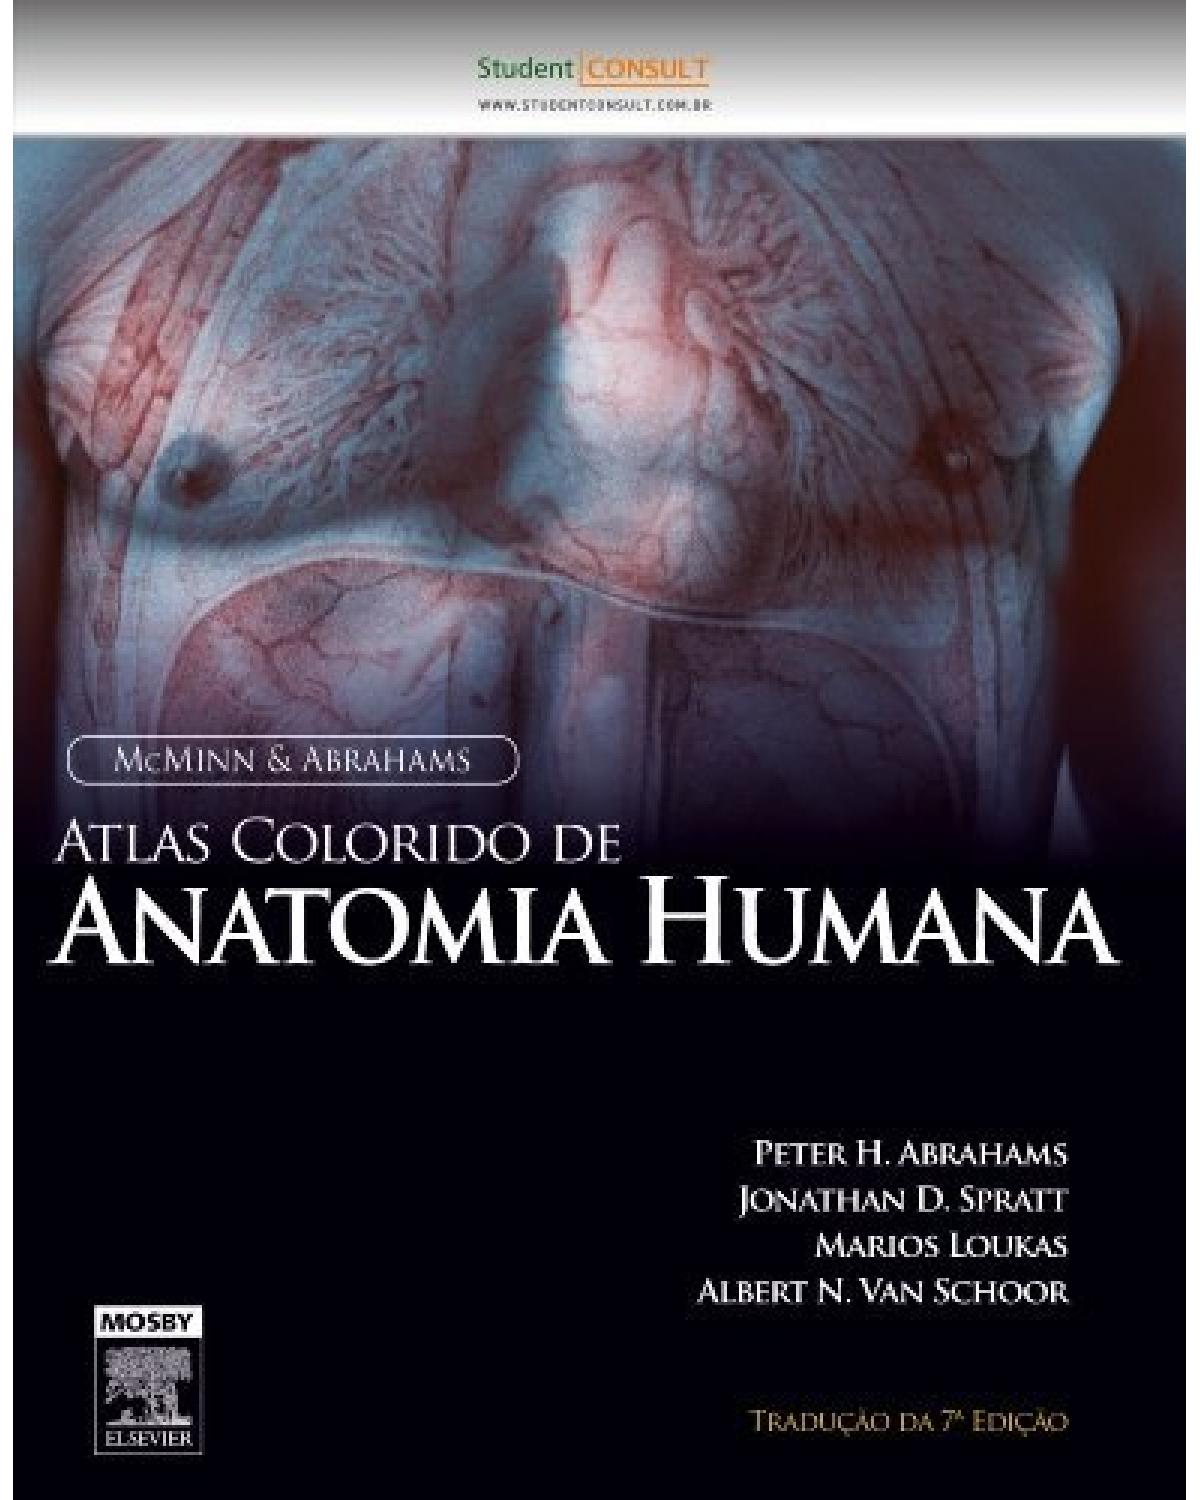 McMinn & Abrahams - Atlas colorido de anatomia humana - 7ª Edição | 2014